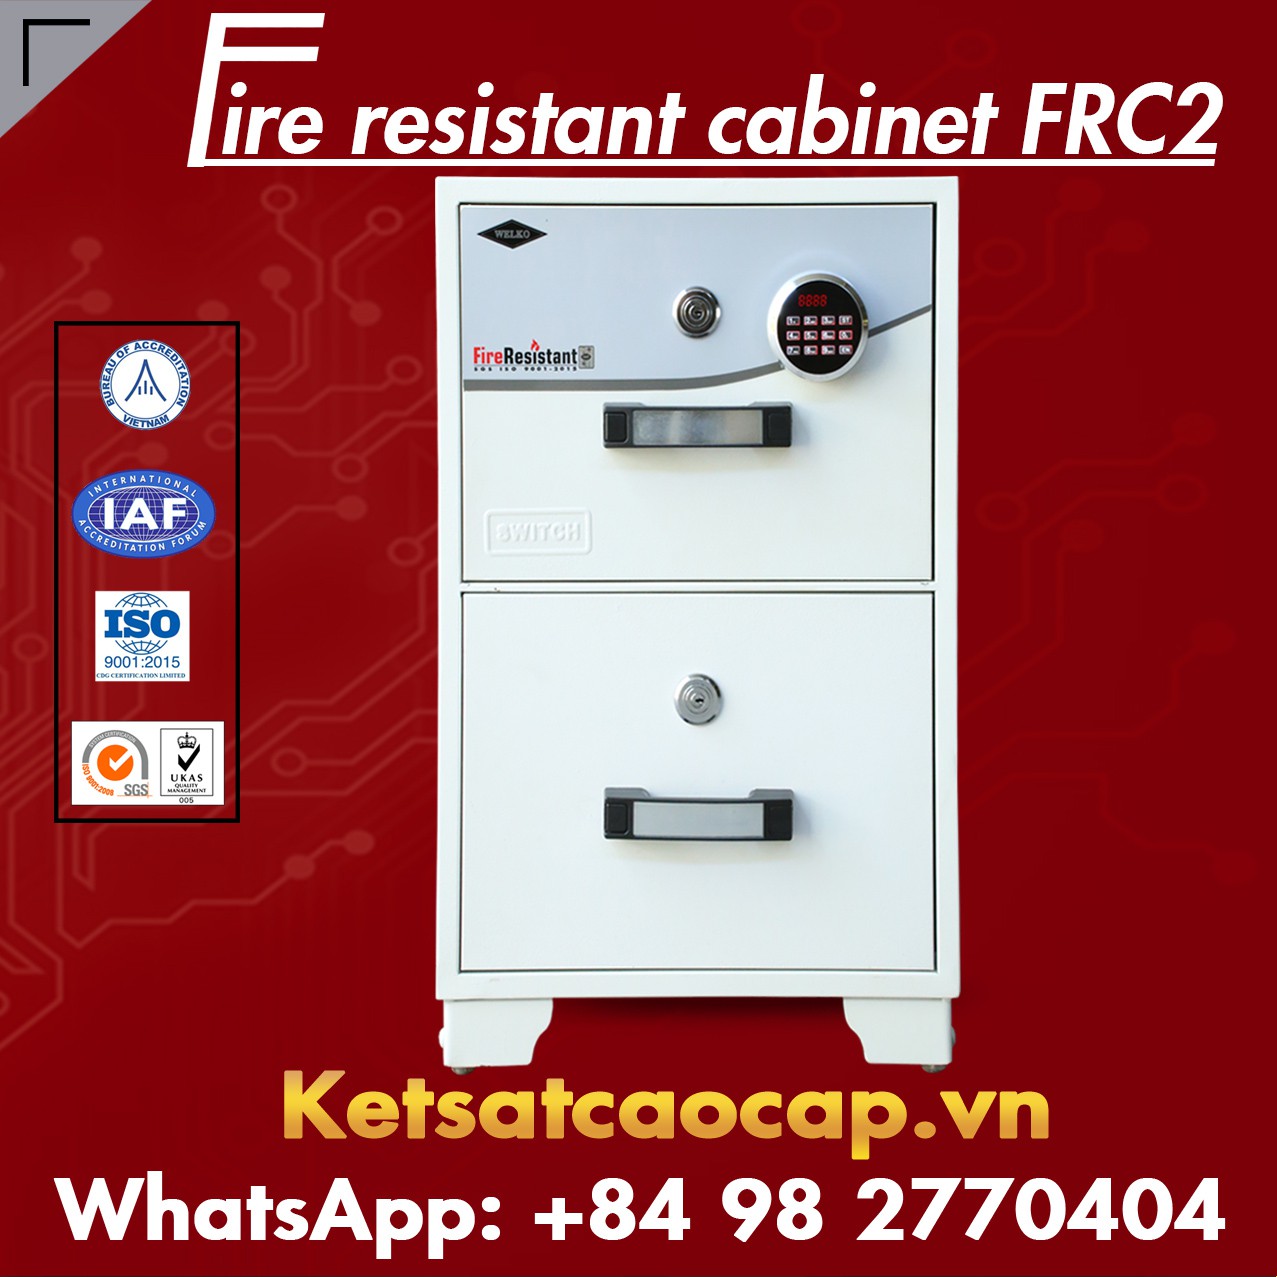 Tủ Chống Cháy FRC2 Giá Rẻ